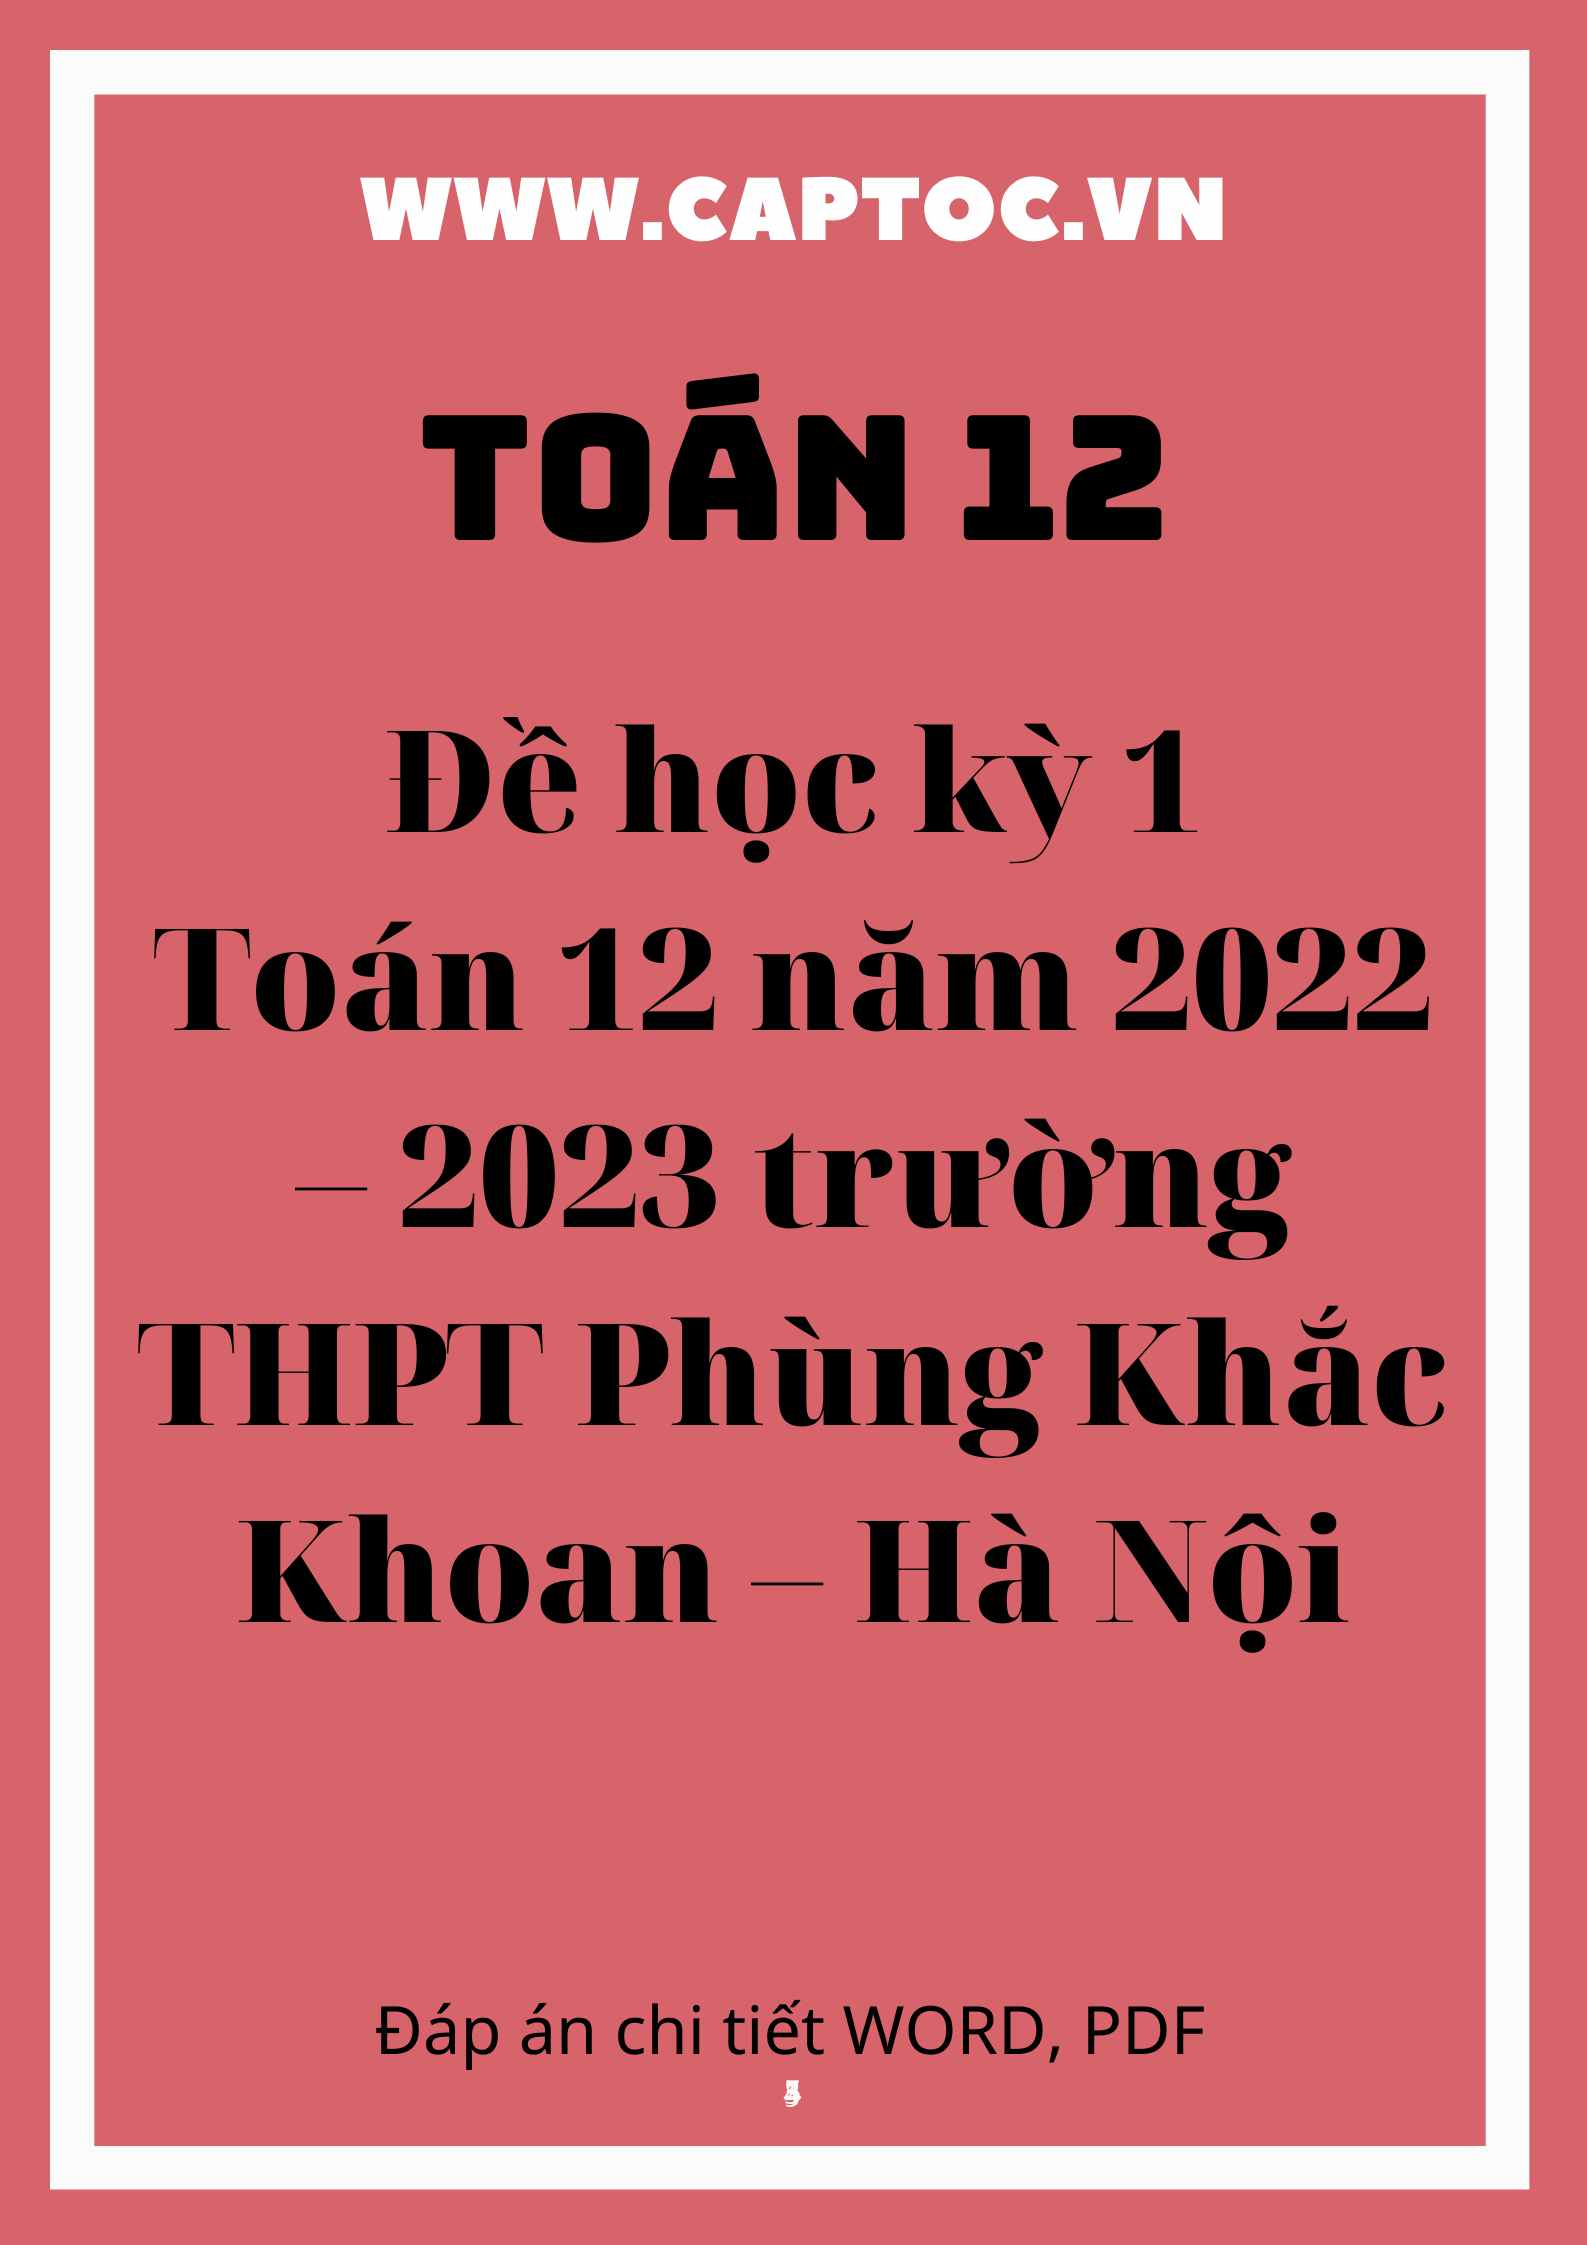 Đề học kỳ 1 Toán 12 năm 2022 – 2023 trường THPT Phùng Khắc Khoan – Hà Nội